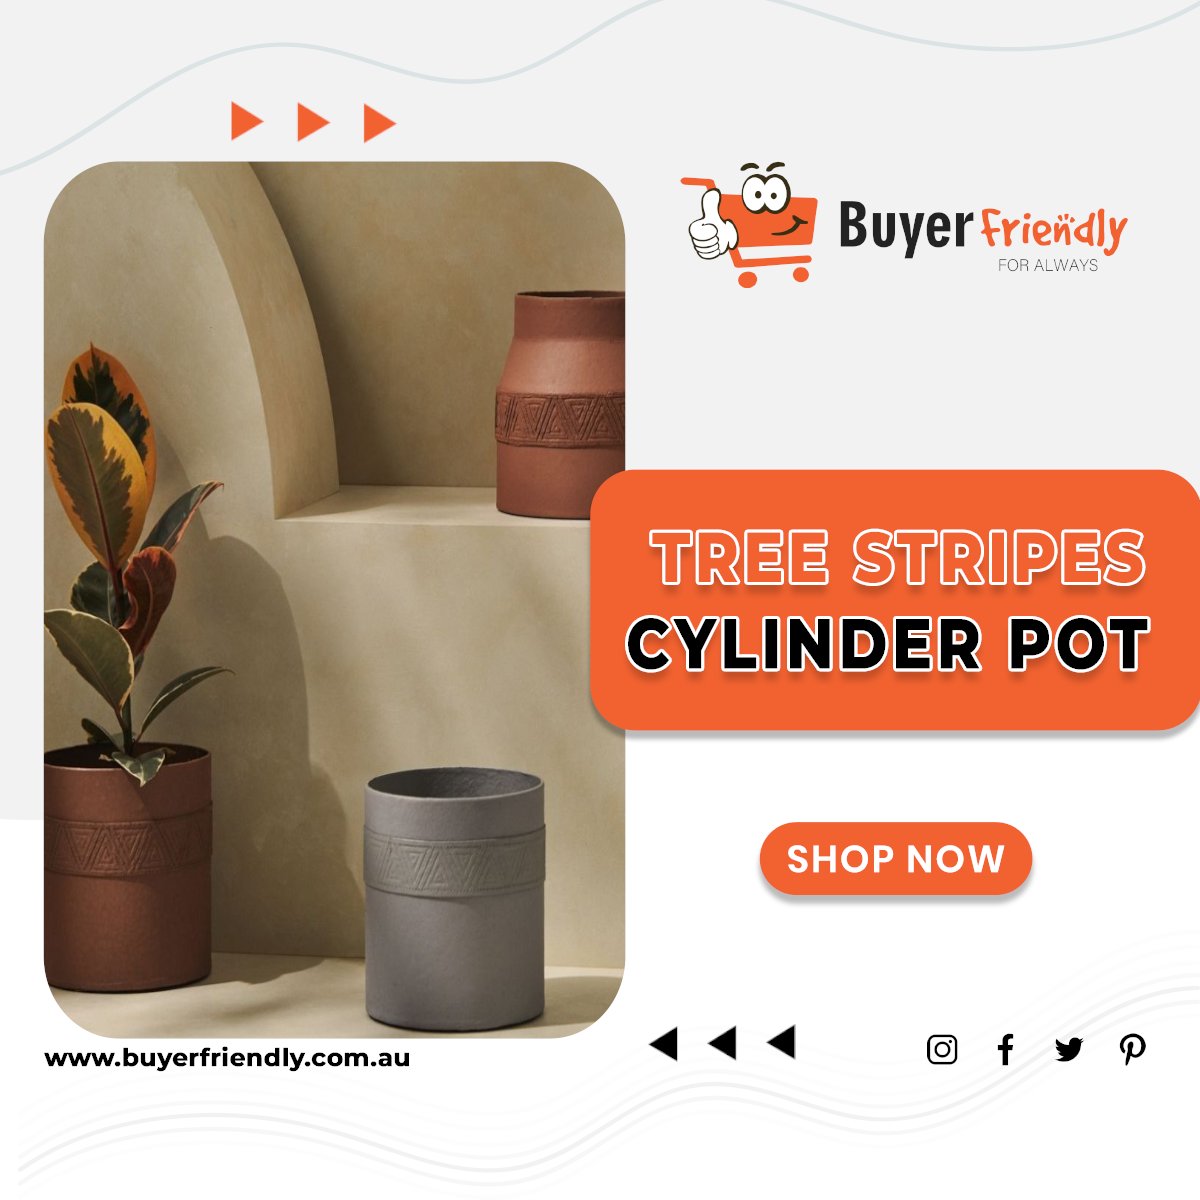 Feel Good About What You Buy

buyerfriendly.com.au/~8421385

#pottery #buyerfriendly #buyerfriendlyau #ceramicpots #potplants #flowerpots #plantpot #planters #terracottapots #gardenpots #plantpots #planter